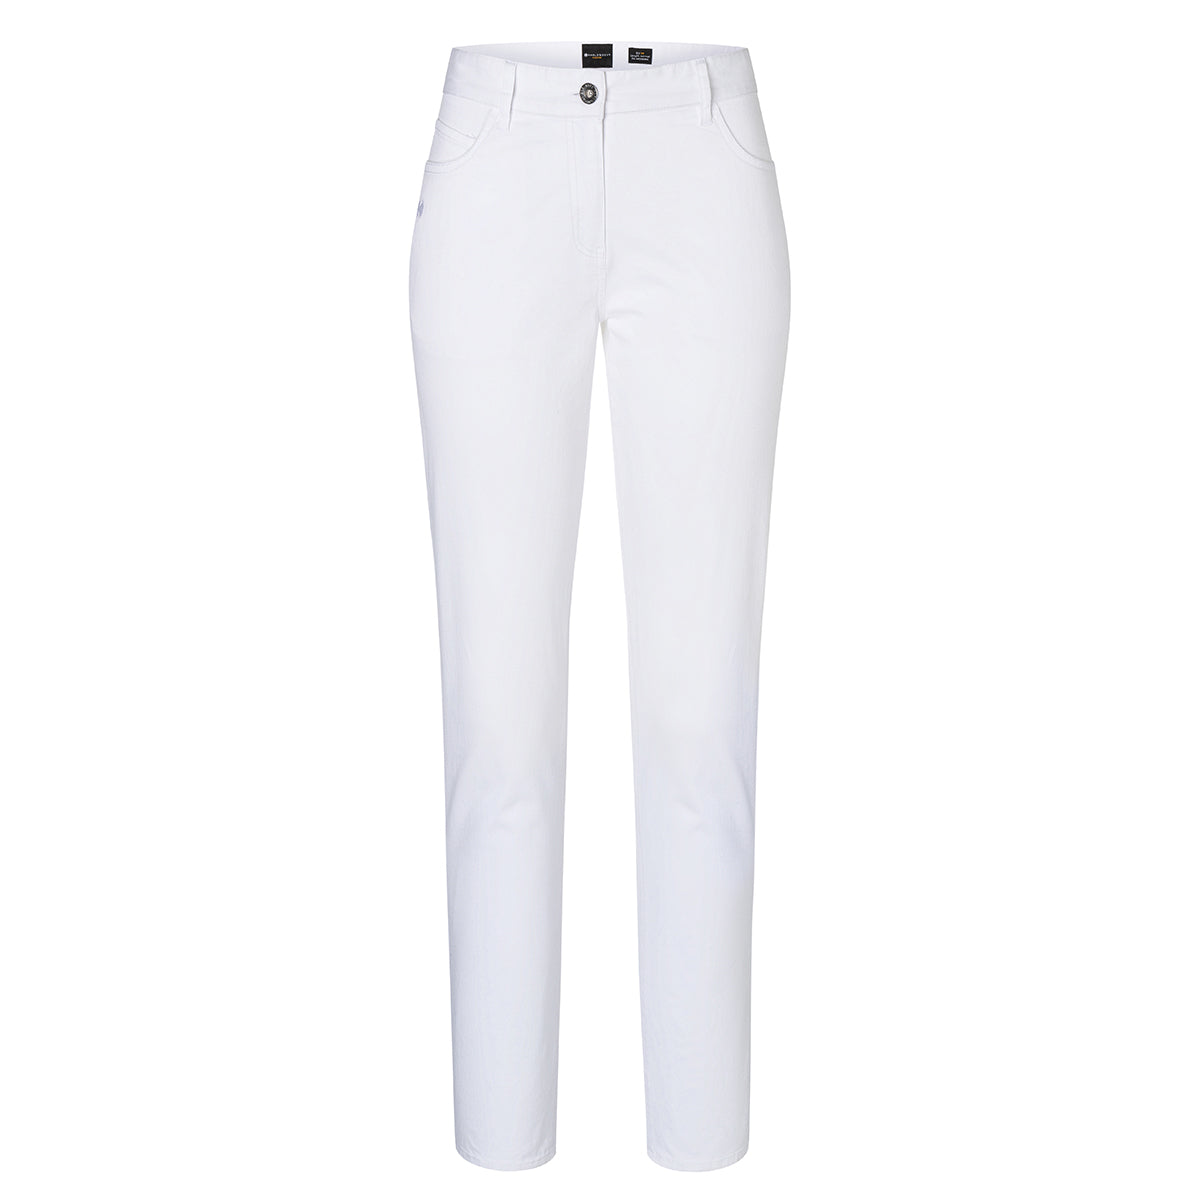 (6 stk.) Karlowsky - bukser med 5 lommer til damer - Hvid - Størrelse: 48